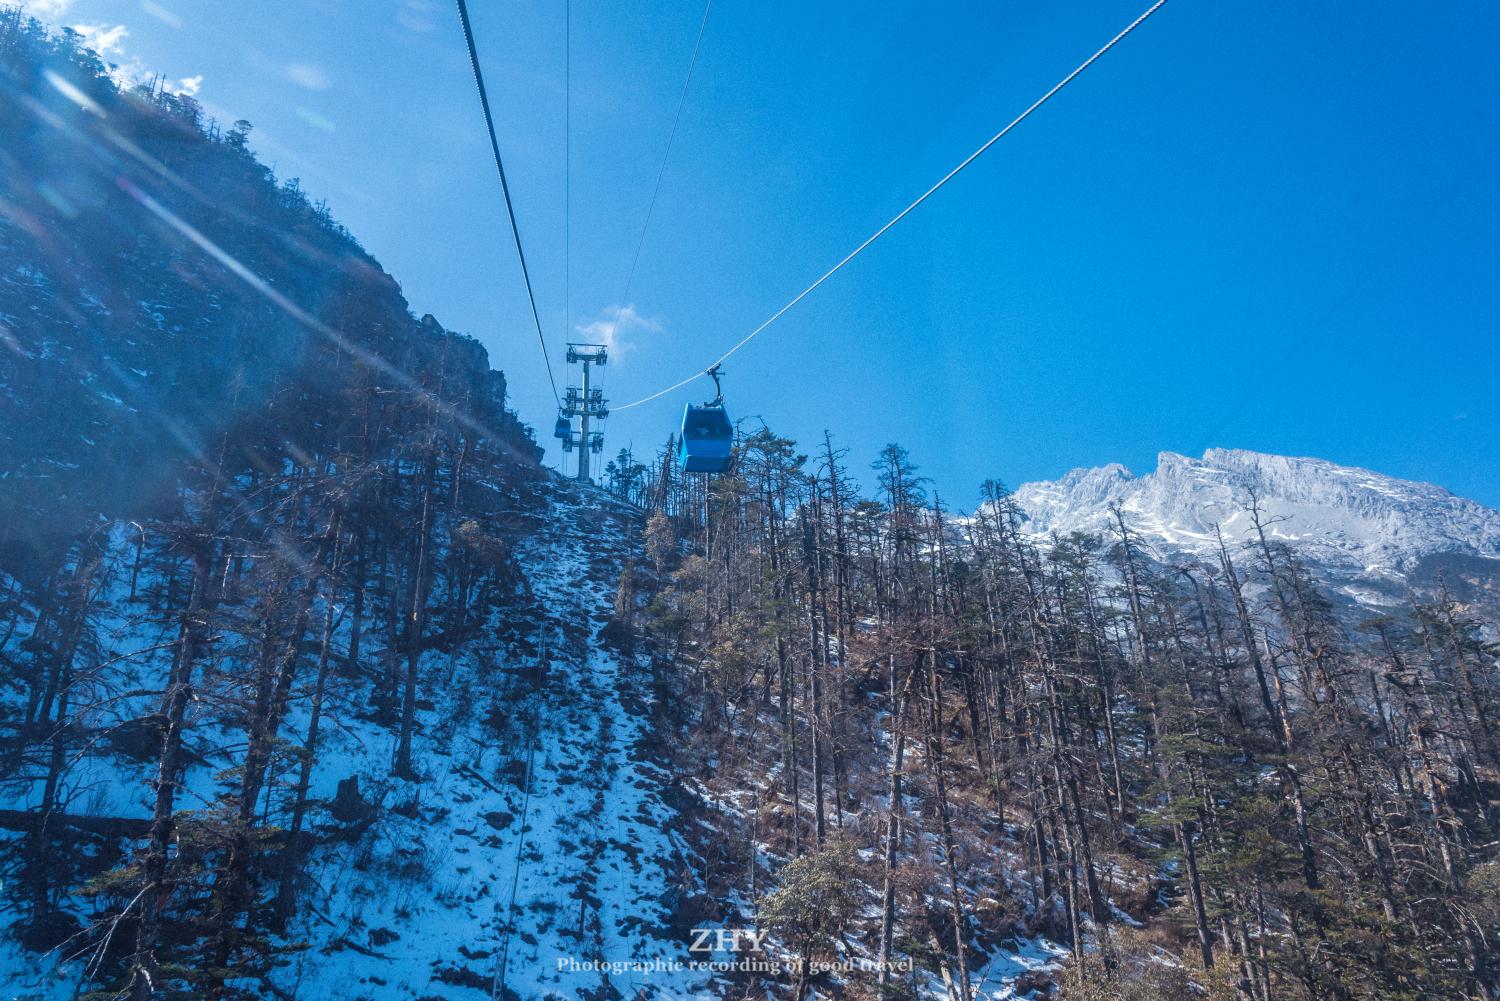 玉龙雪山,拥有国内海拔最高的索道,游客轻松登顶4605米高峰